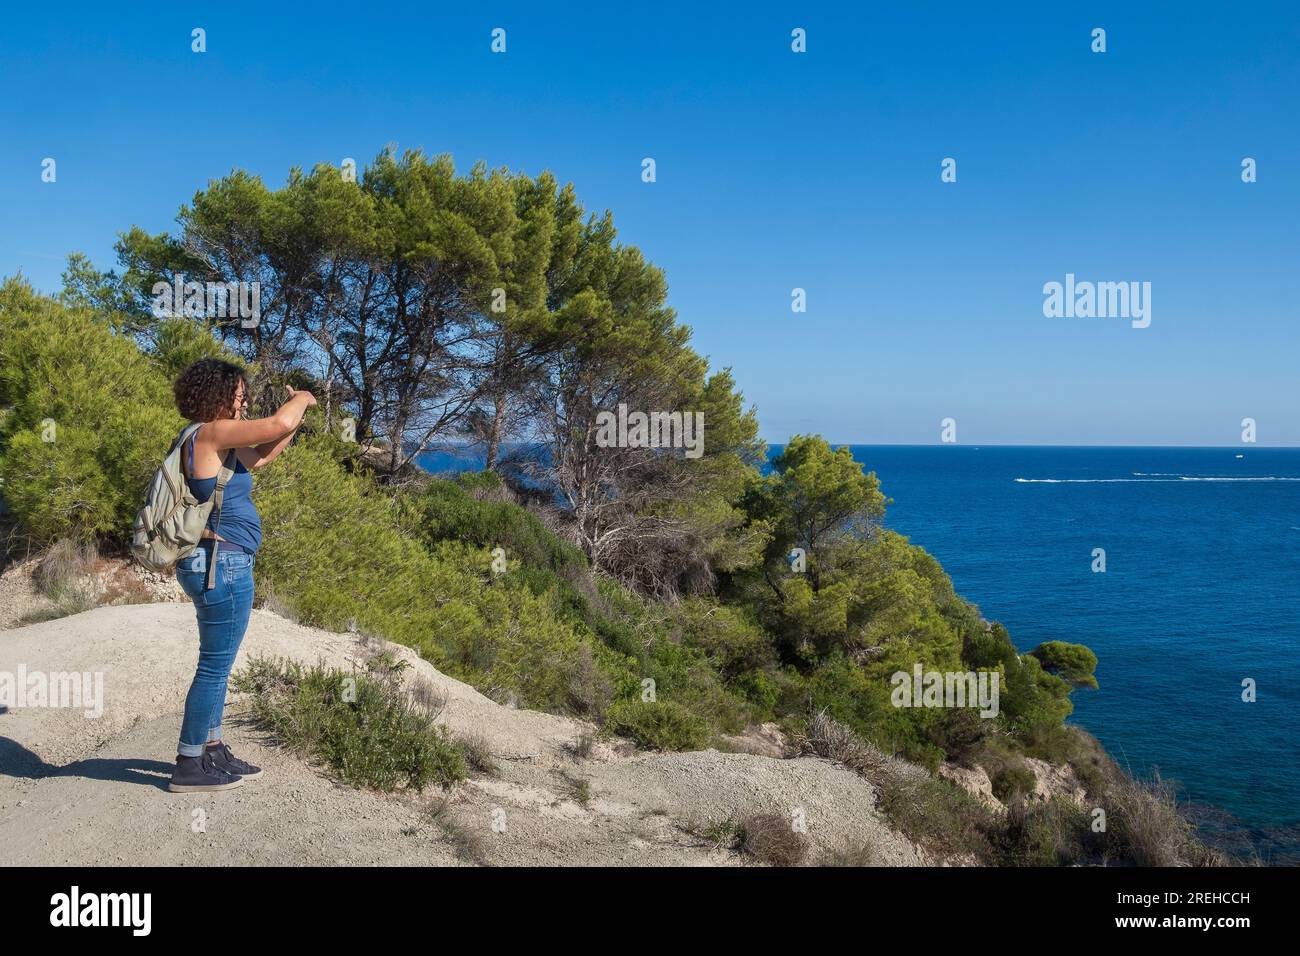 Una donna a Javea (Xabia) a Cap prim e guarda al mare. Foto Stock